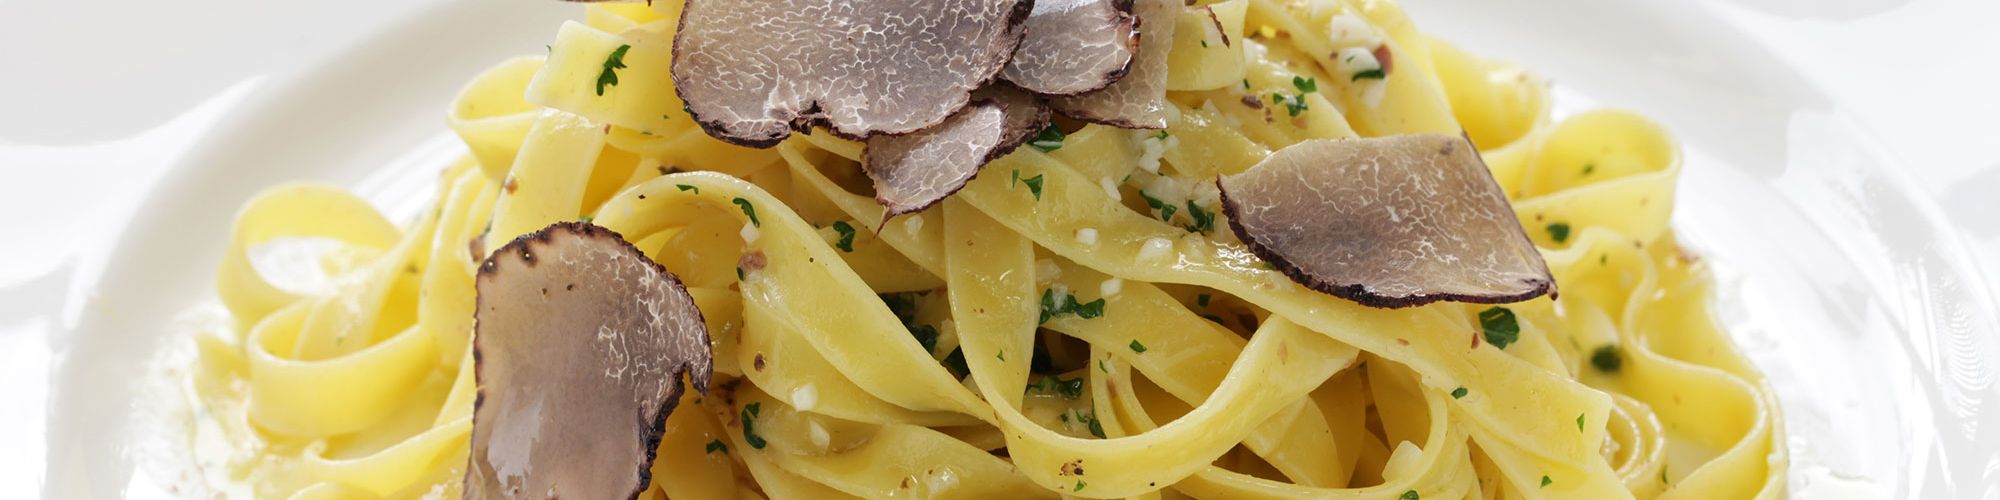 ricetta Tagliatelle al Tartufo Nero con pasta fresca